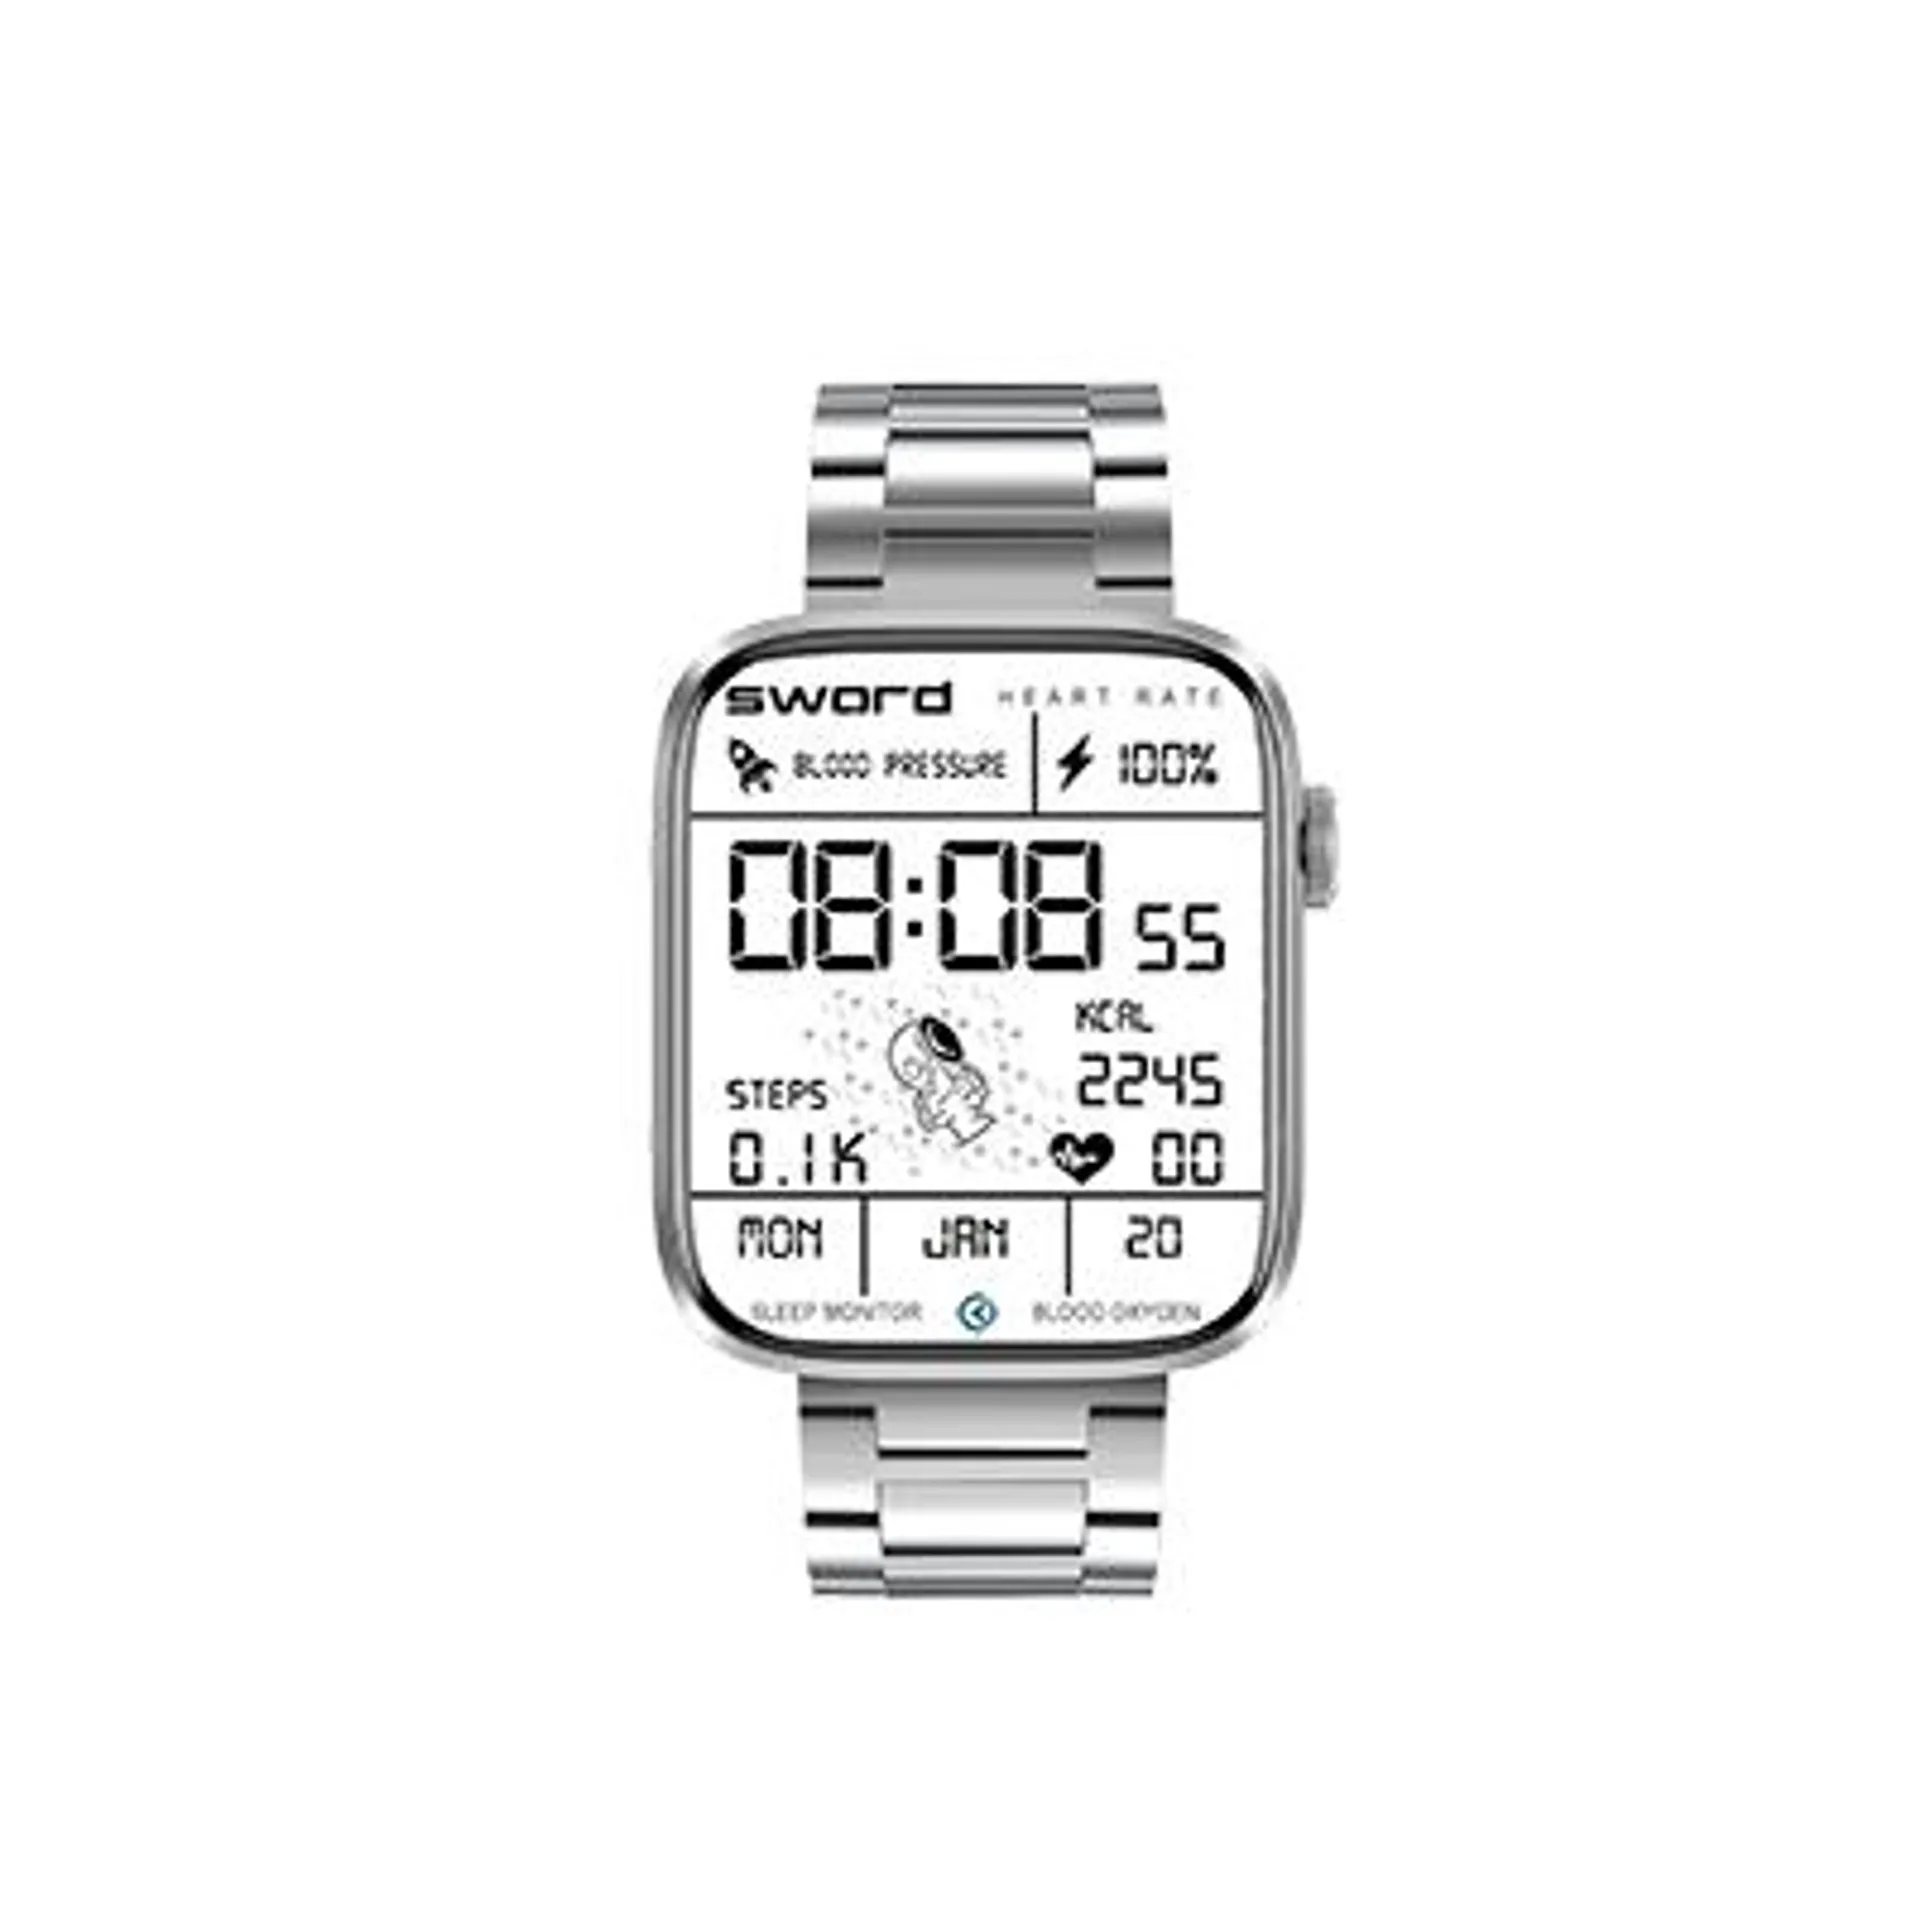 SW-GIA Smart Watch2